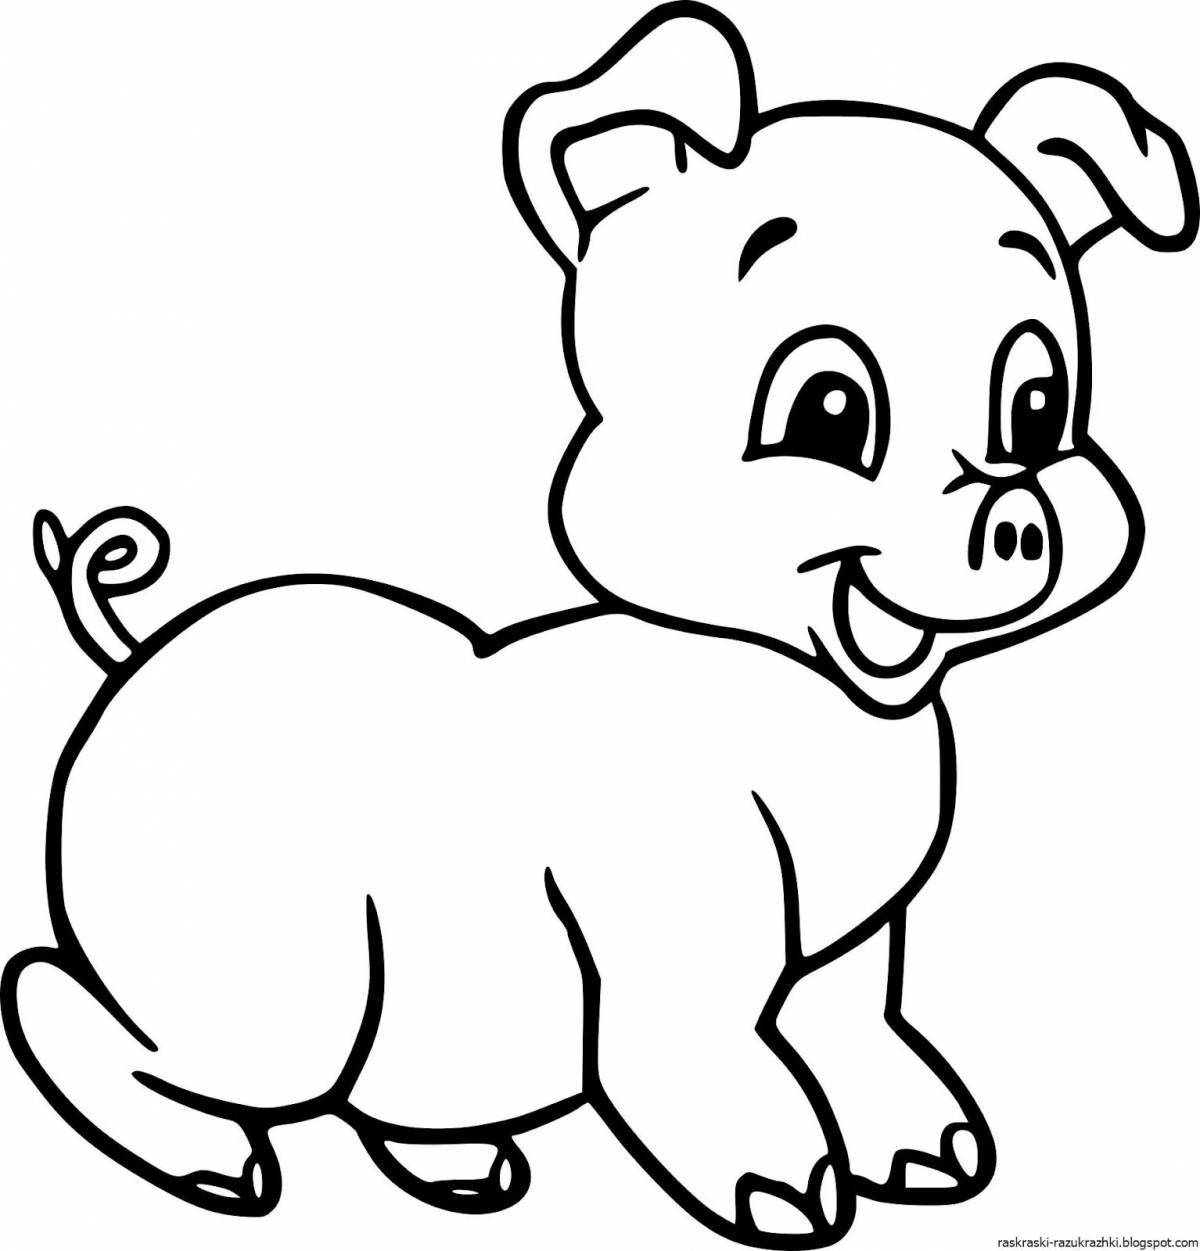 Юмористическая раскраска свинья для детей